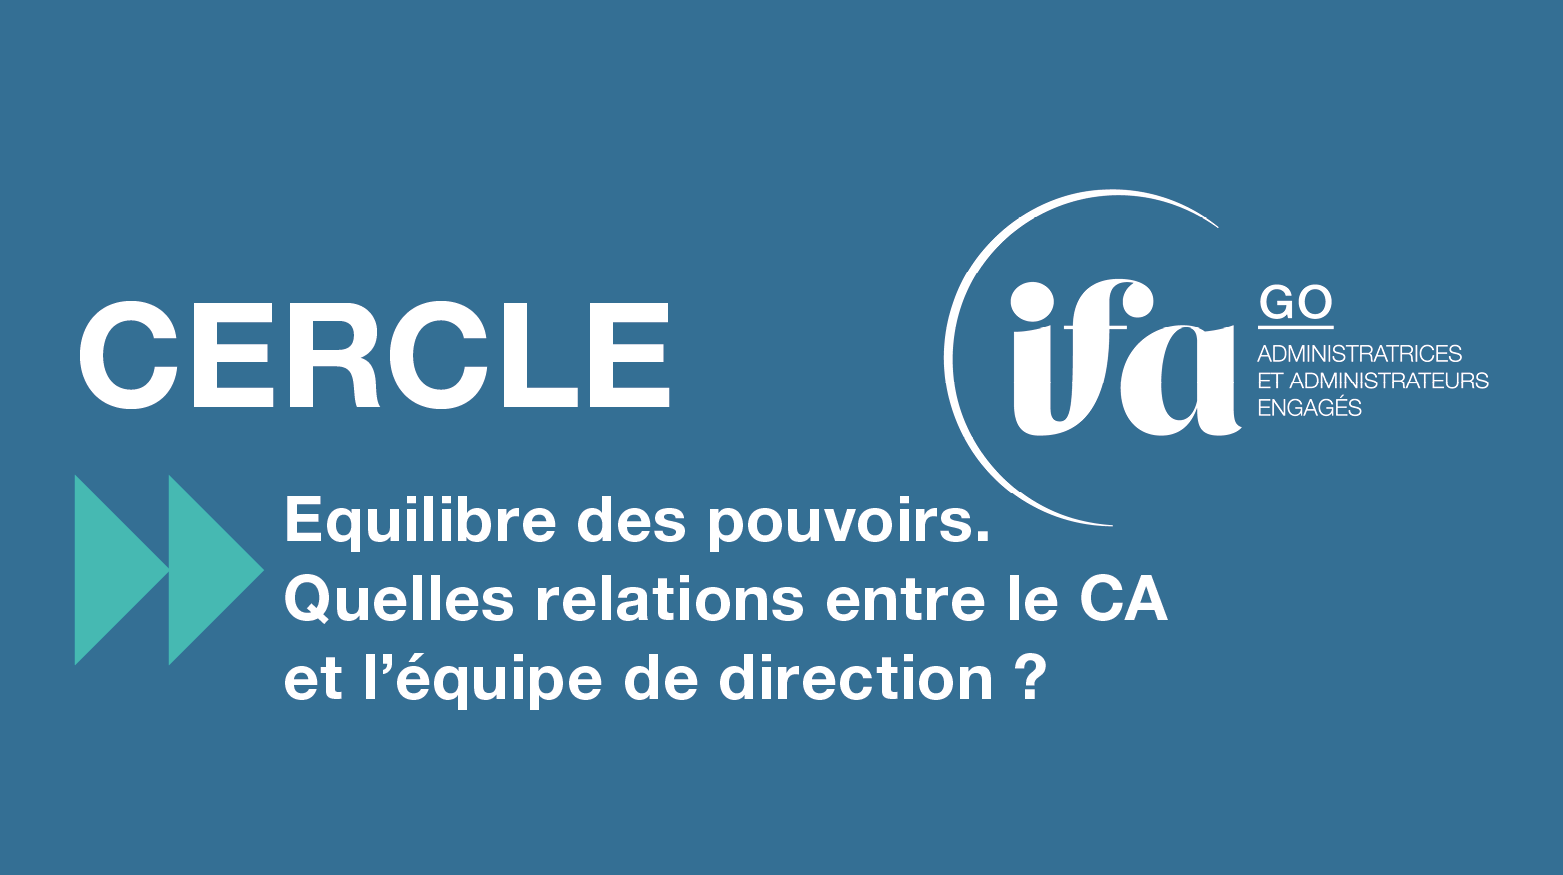 Cercle IFA GO à Angers | 11 avril | Equilibre des pouvoirs, relations DG/CA ?